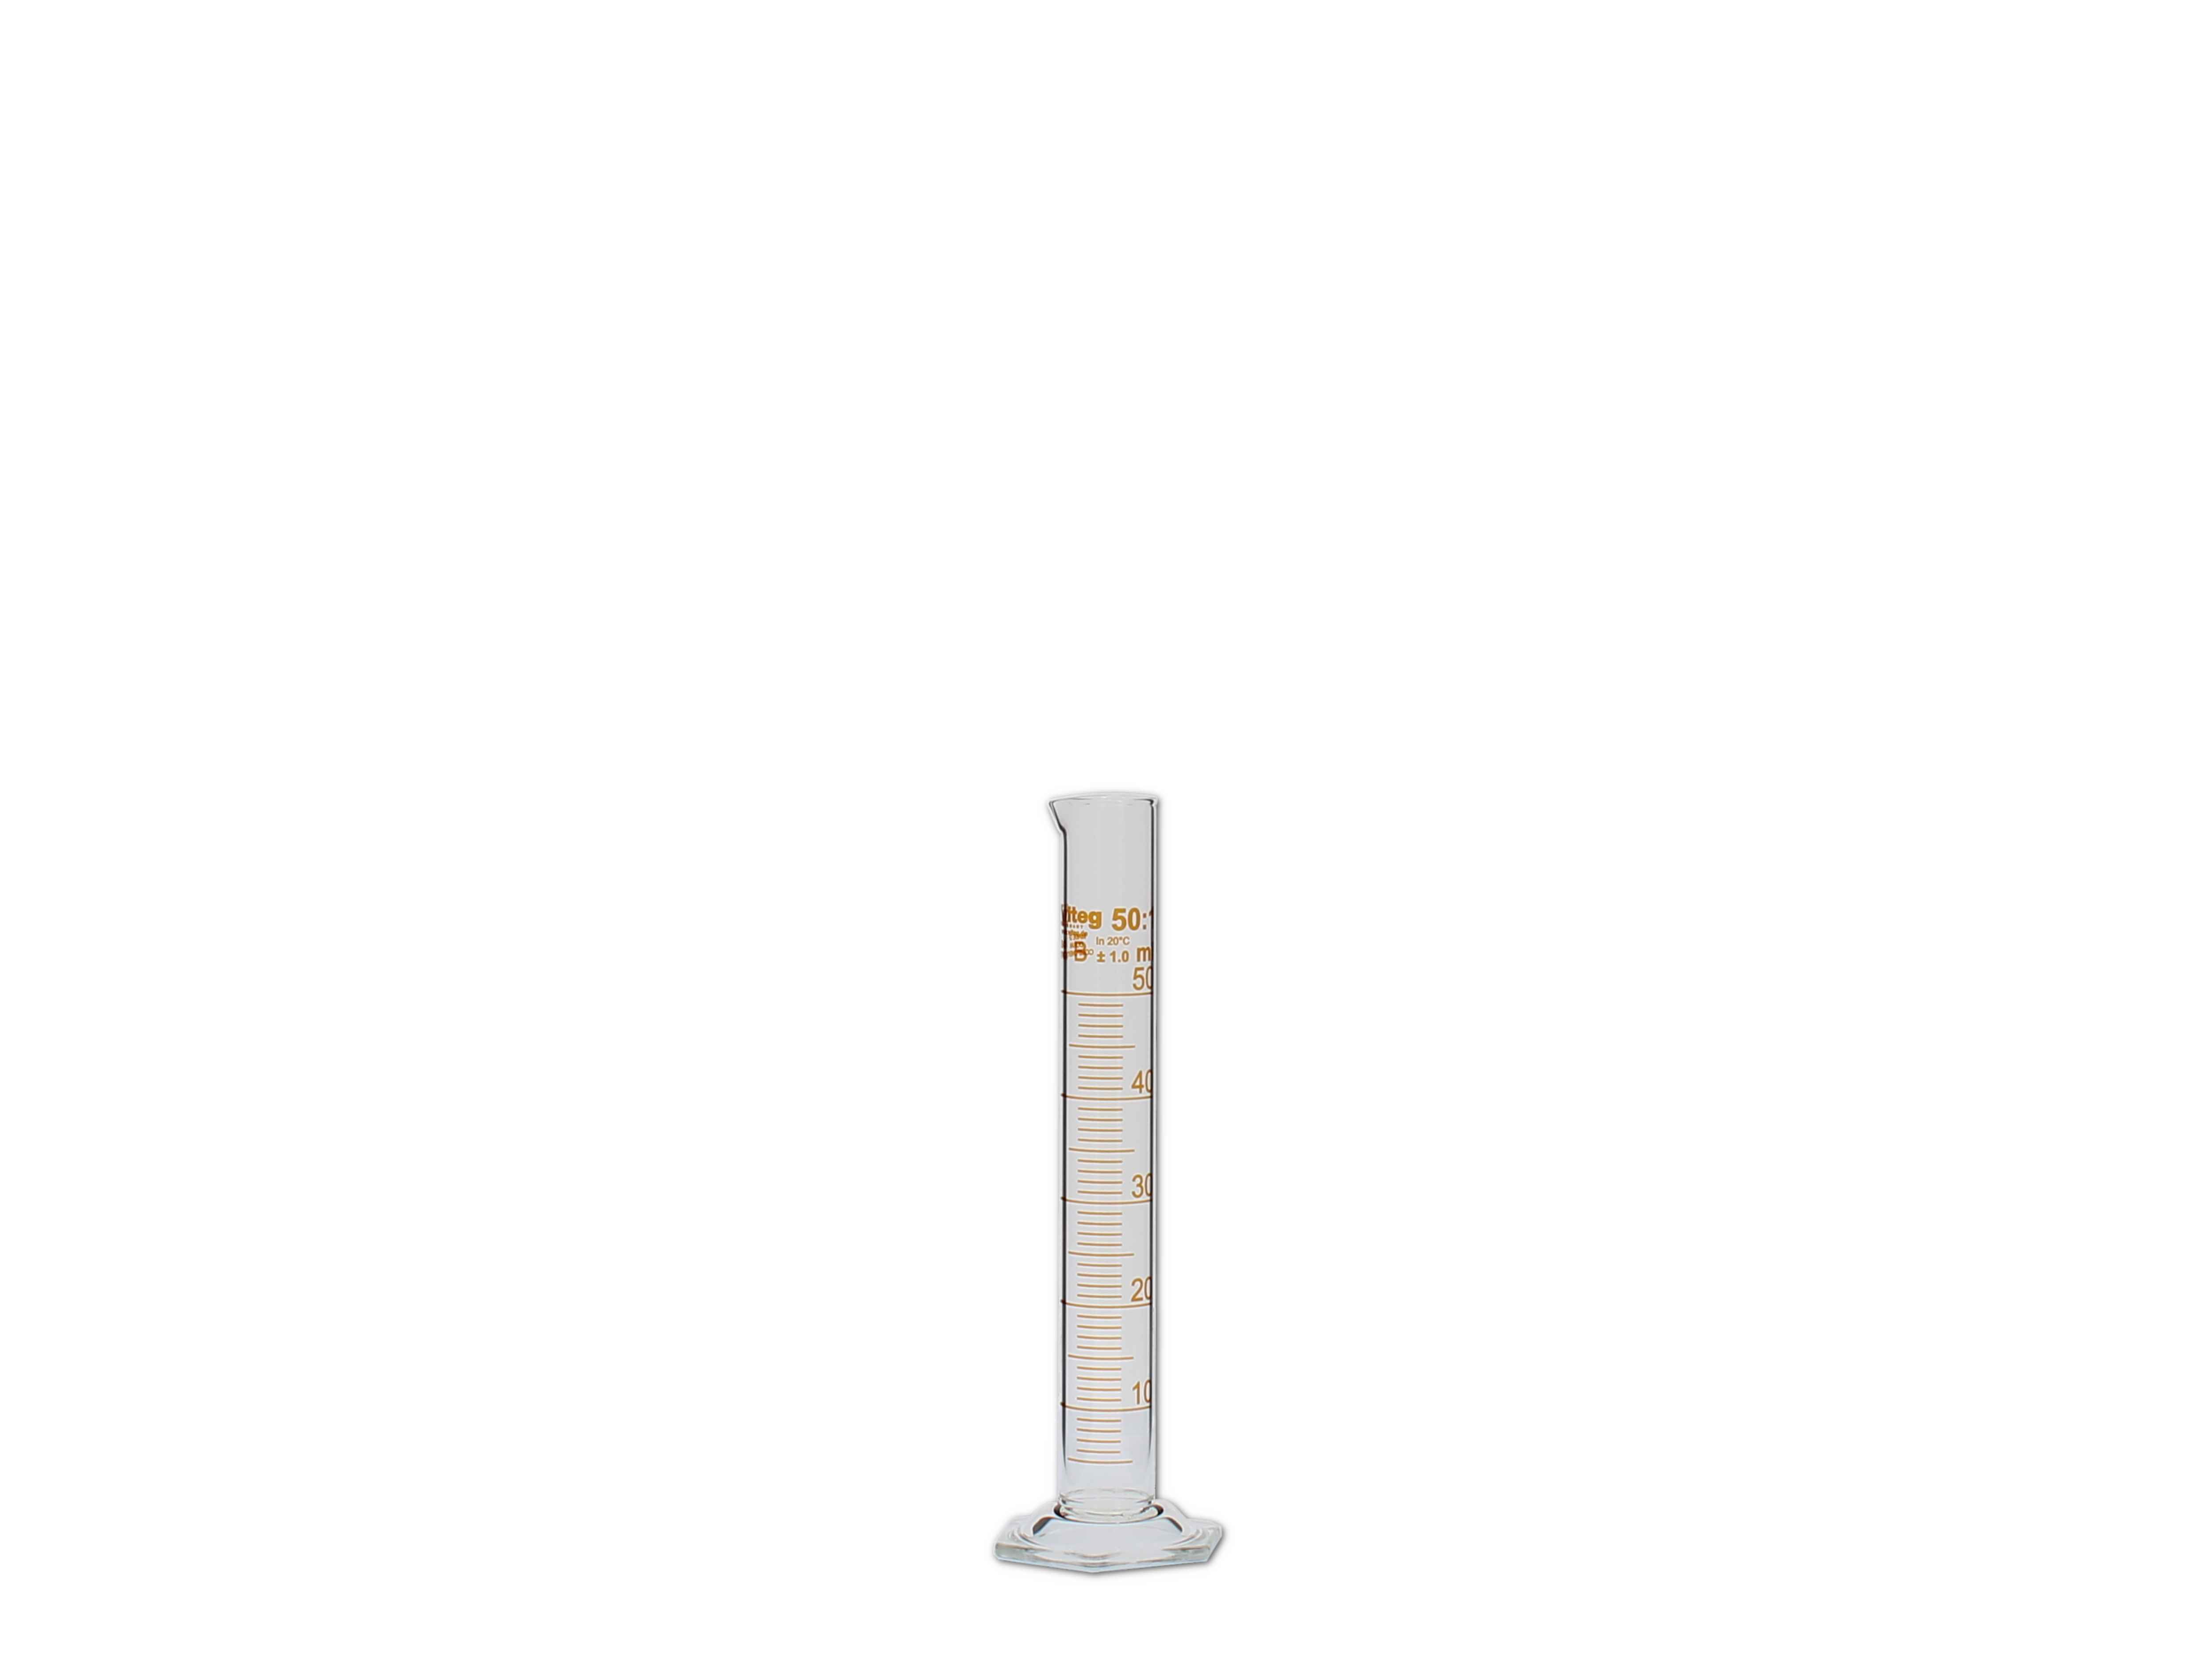    Messzylinder, Glas, graduiert - 50ml (hohe Form)